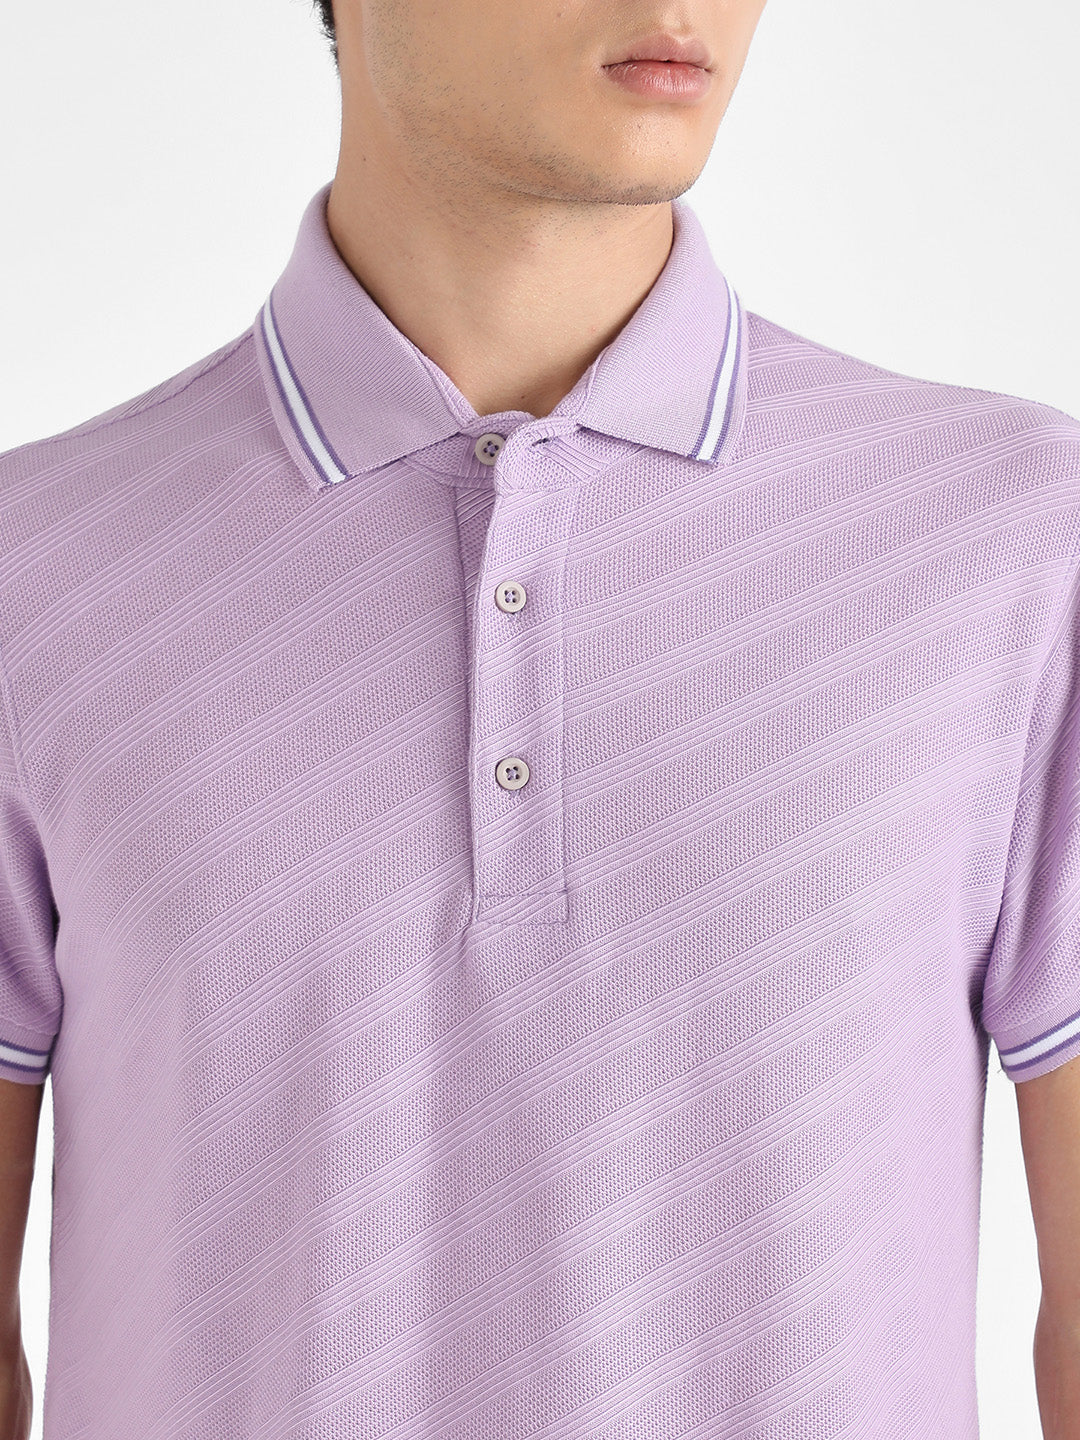 Men's Lavender Self-Design Regimental Striped T-Shirt